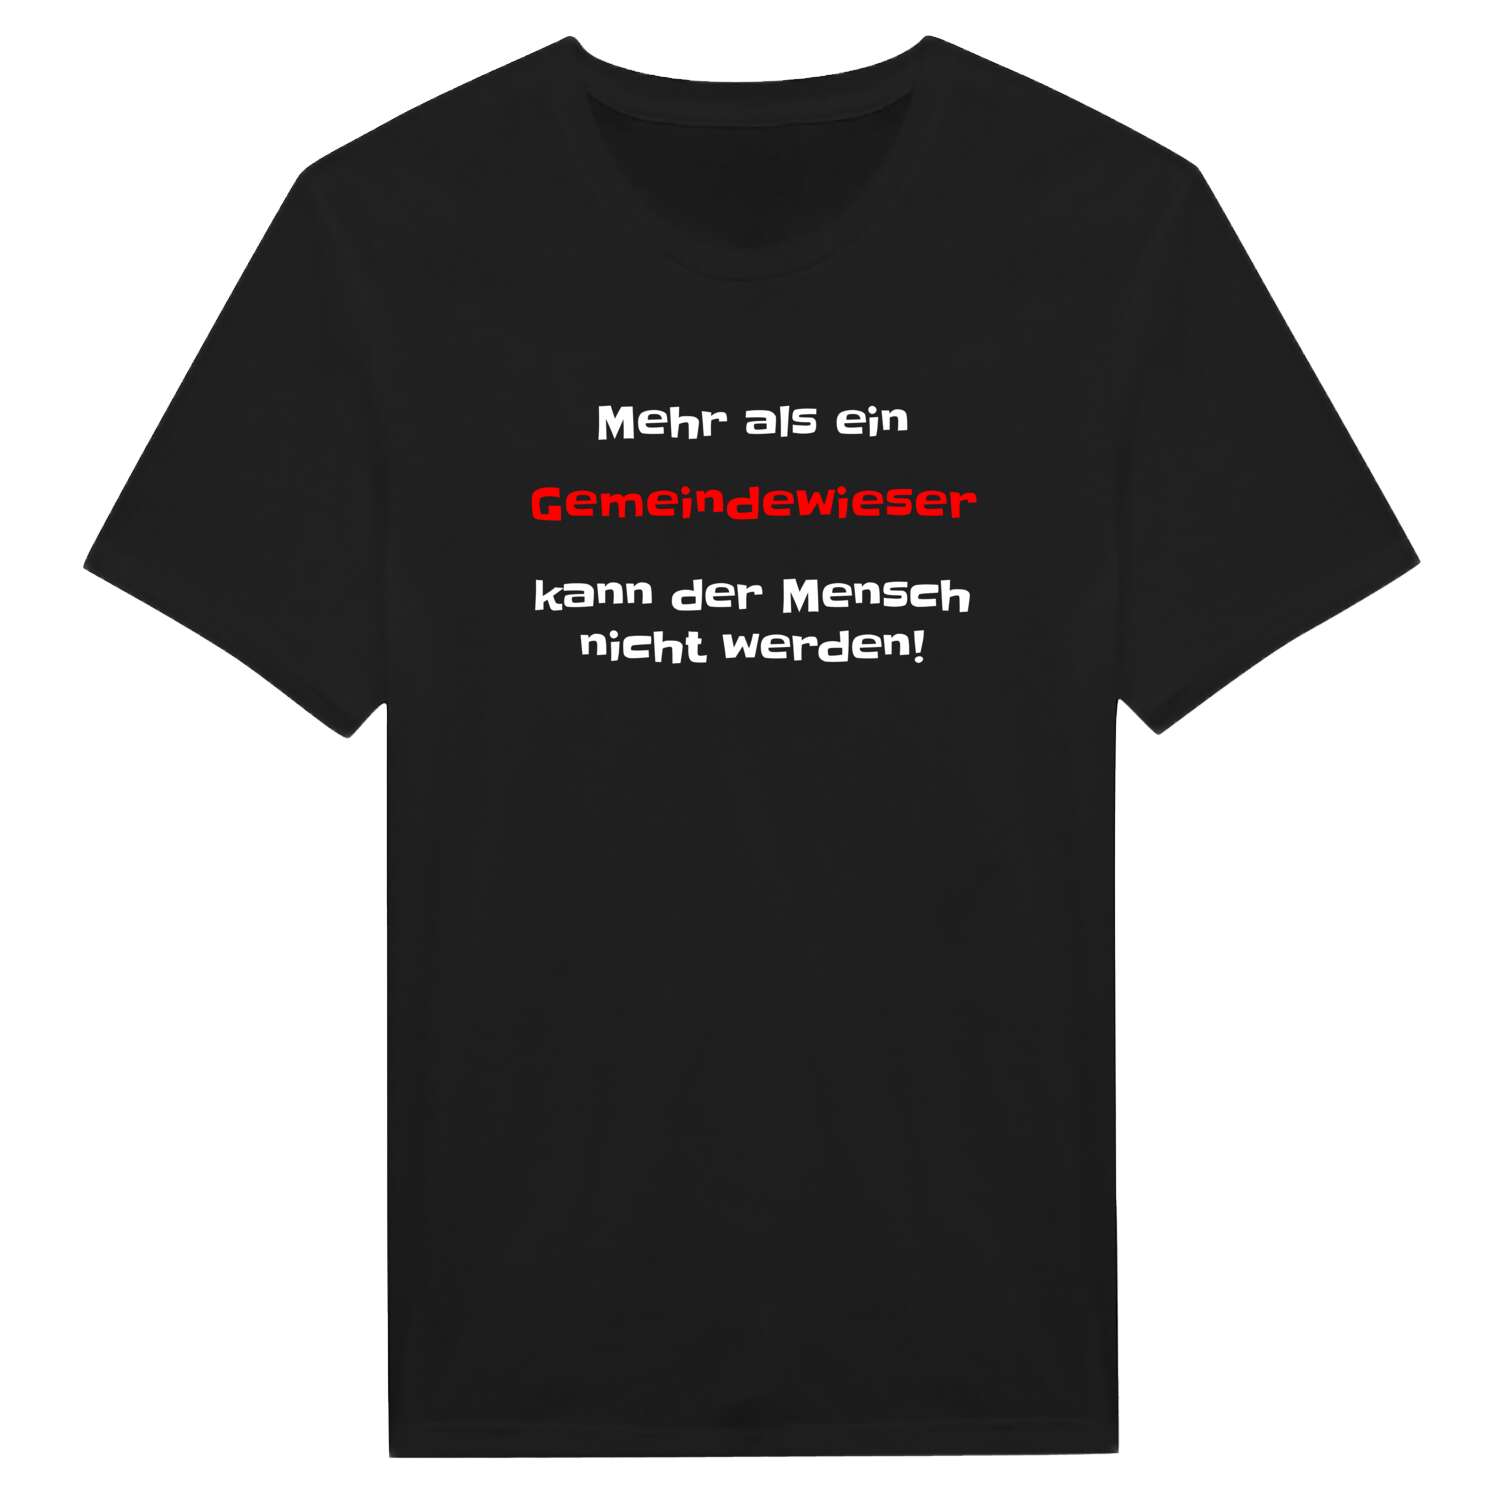 Gemeindewies T-Shirt »Mehr als ein«